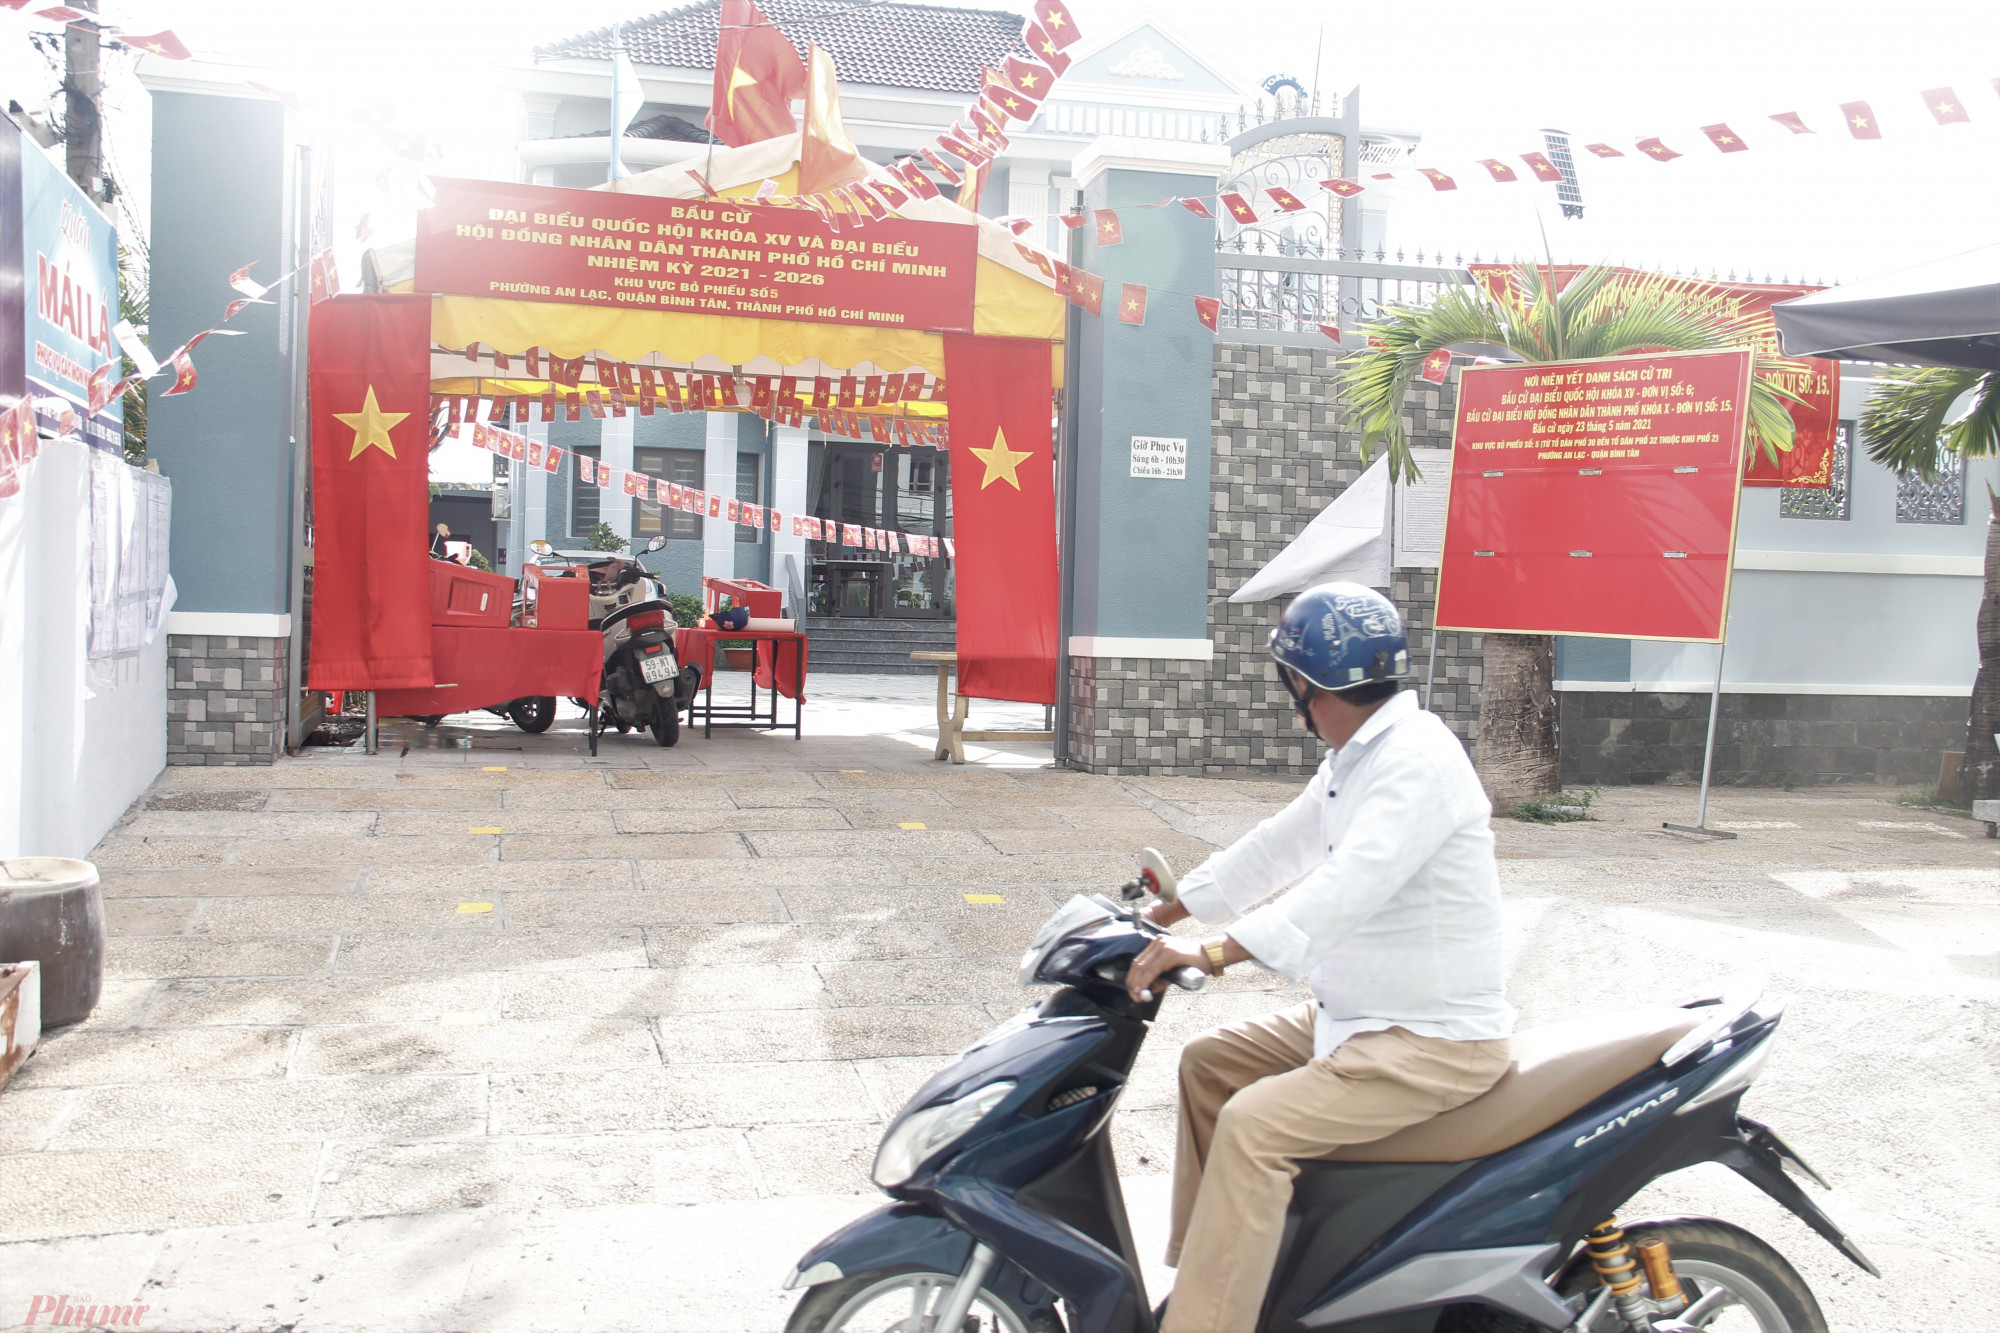 Năm nay, nhà của ông Nguyễn Văn Chiếu ở địa chỉ số 110 đường Lê Tấn Bê, phường An Lạc sẽ là địa điểm bỏ phiếu của hơn 1.400 cử tri. 